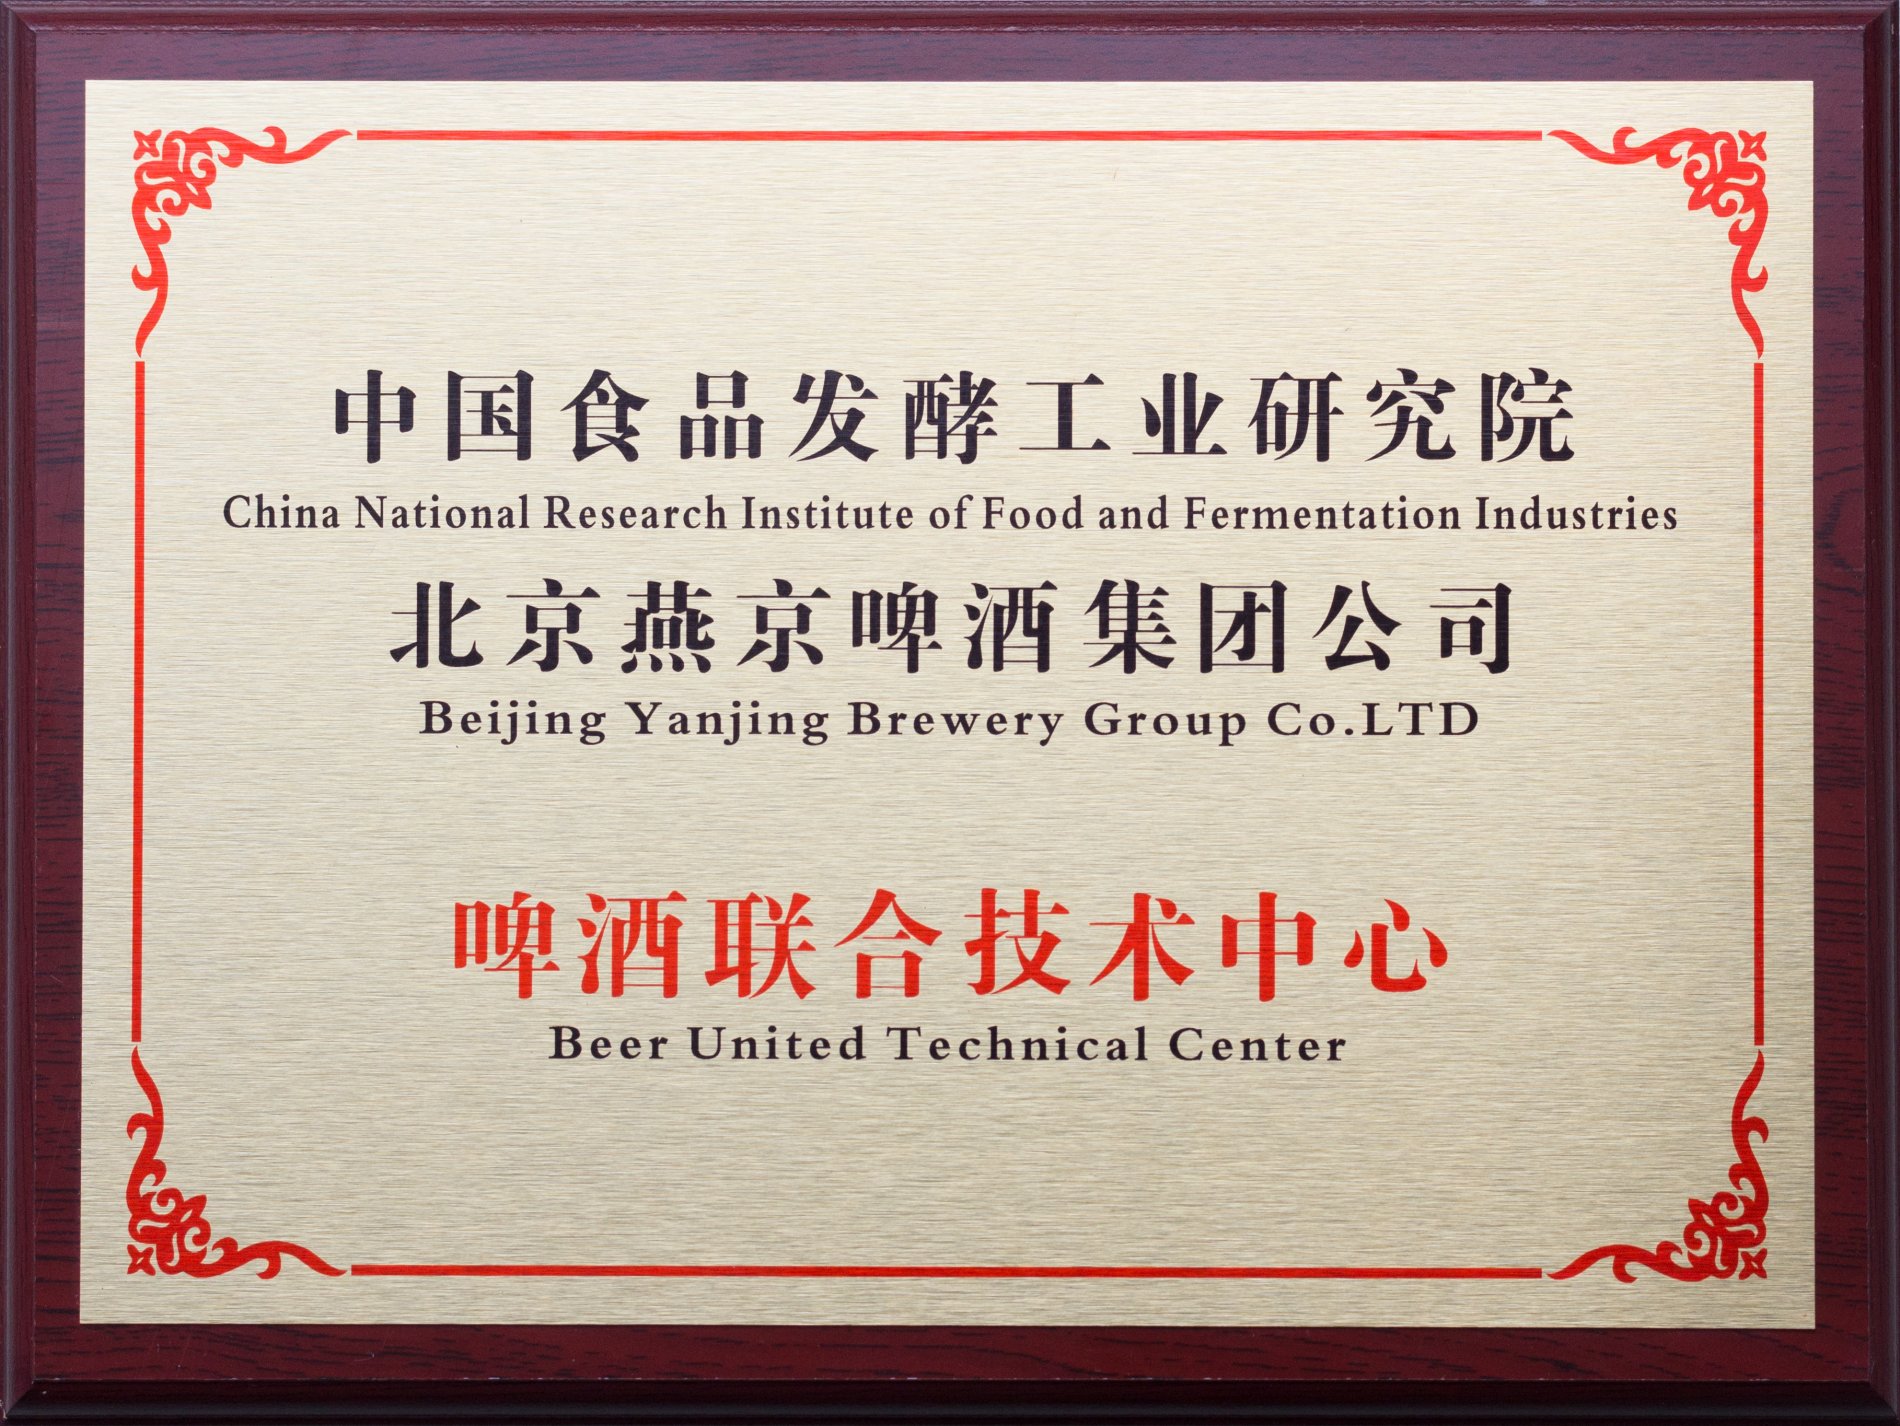 北京燕京啤酒联合技术中心